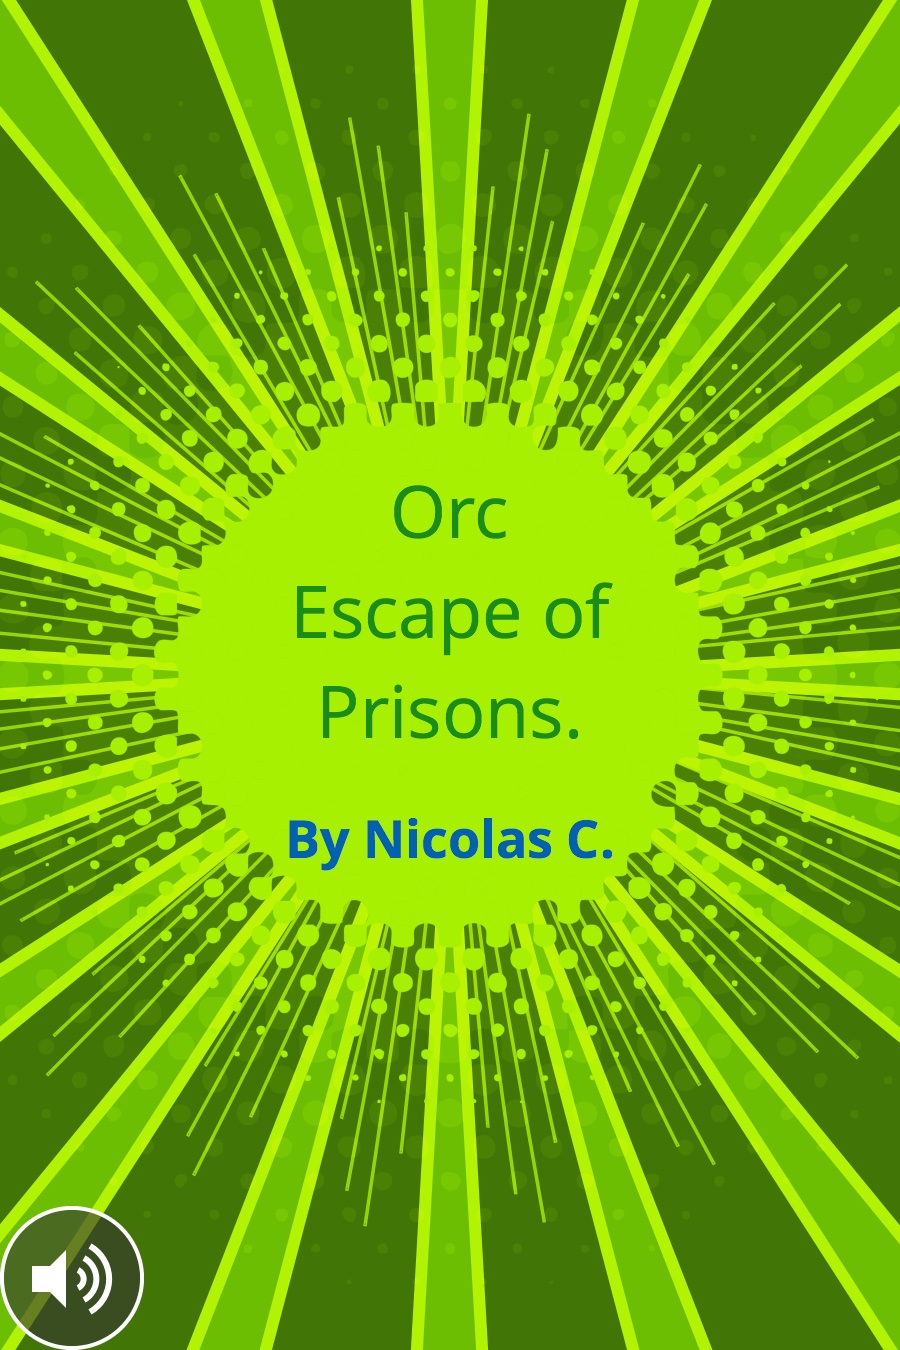 Orc Escape of Prisons by Nicholas C